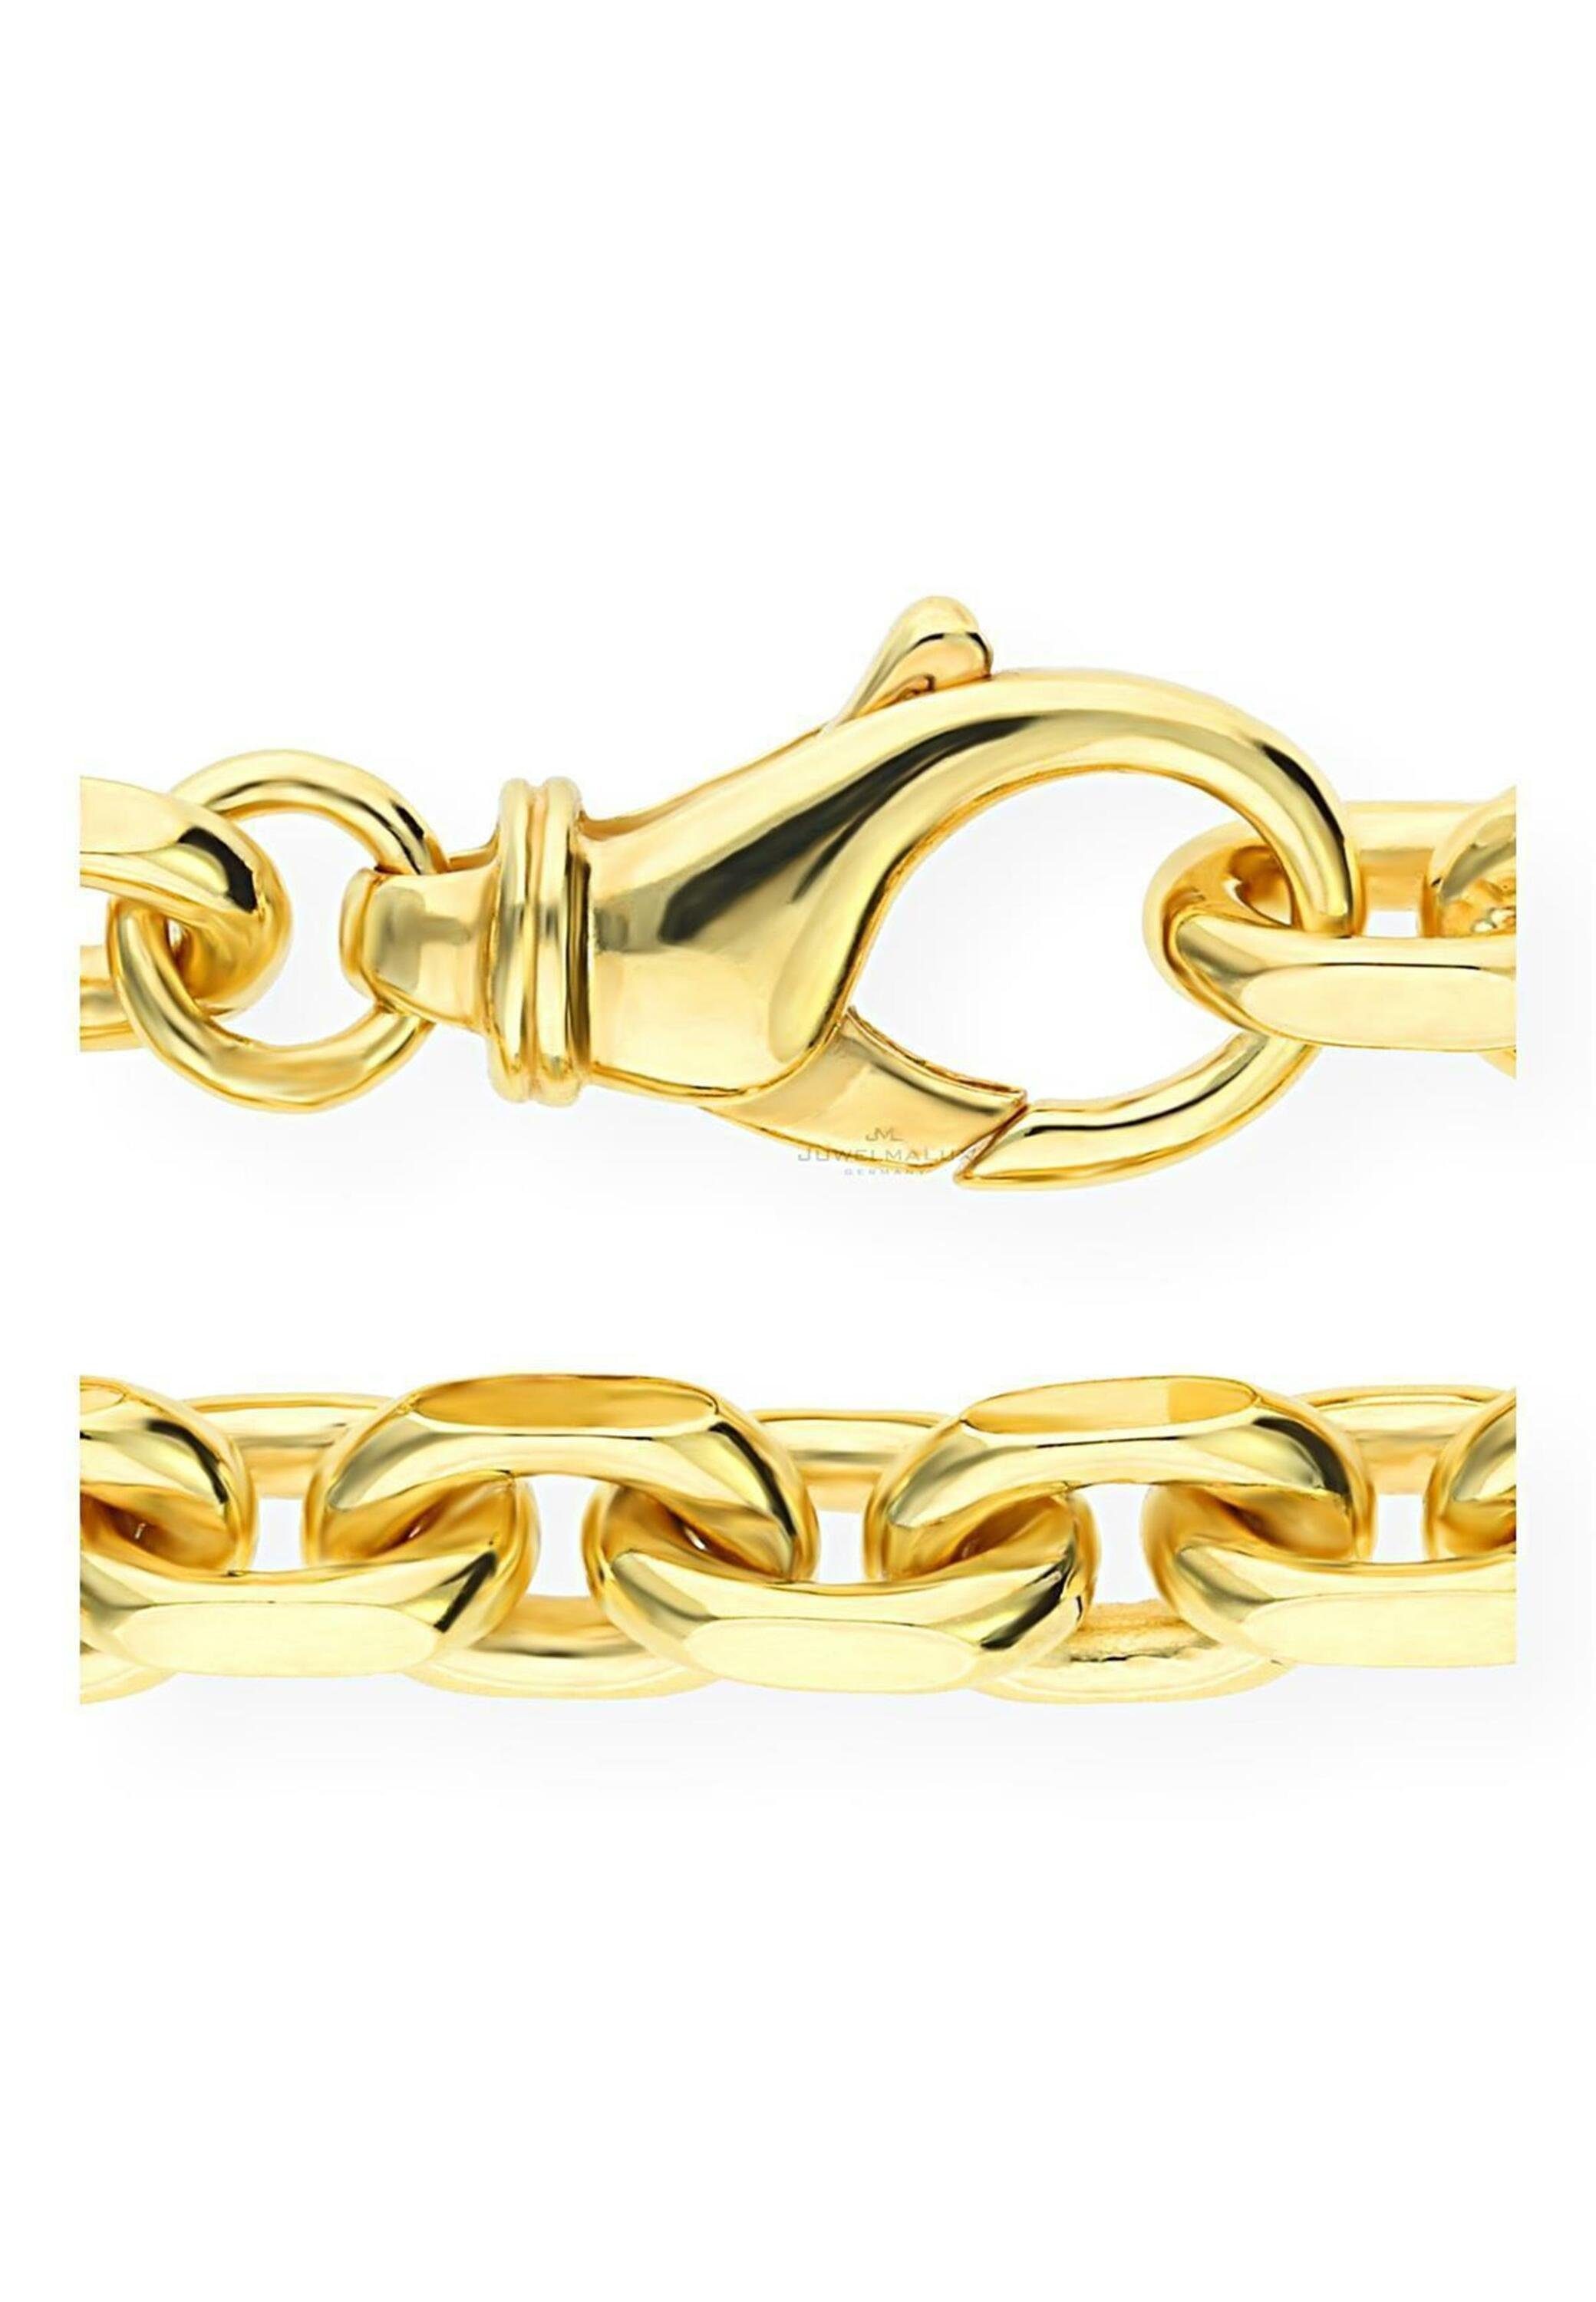 JuwelmaLux Goldkette Halskette Anker 750/000 18 Karat Gold massiv